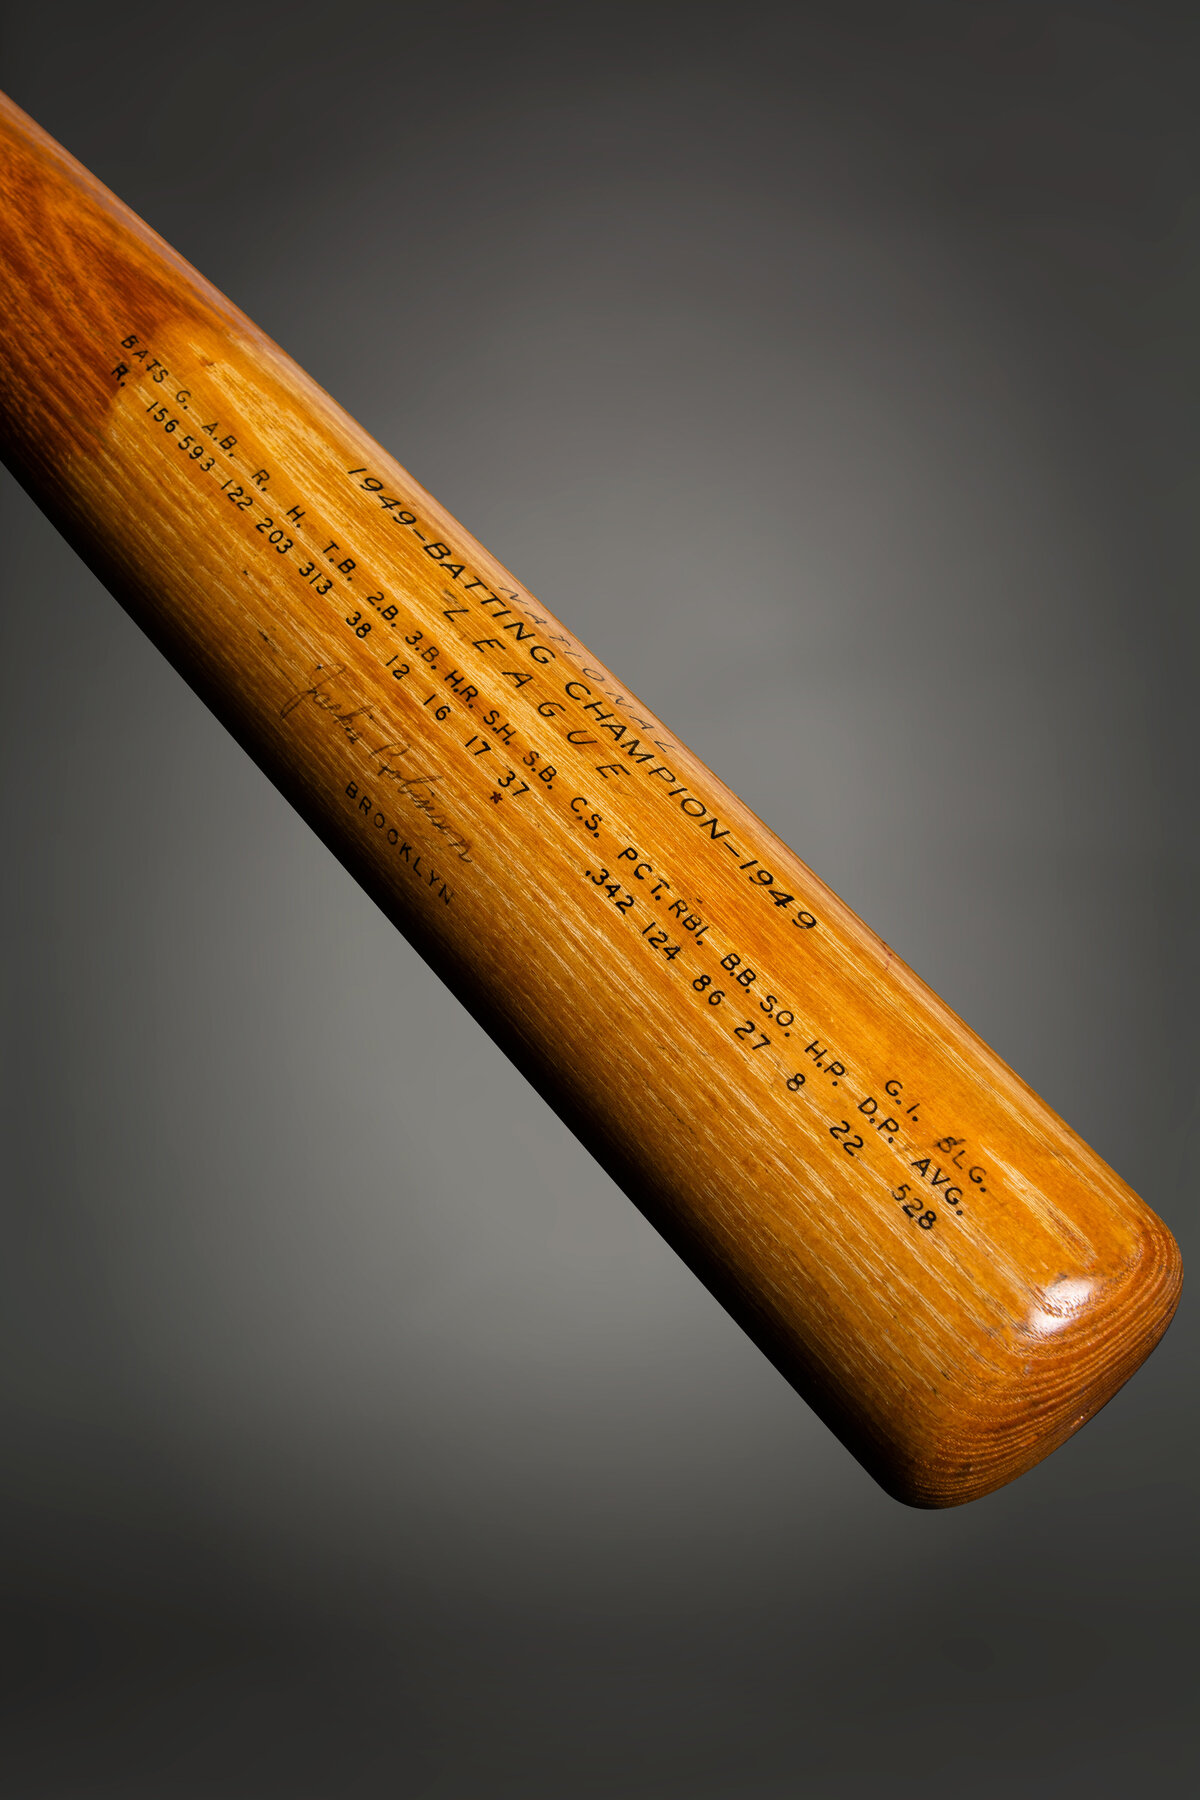 Jackie Robinson signed bat